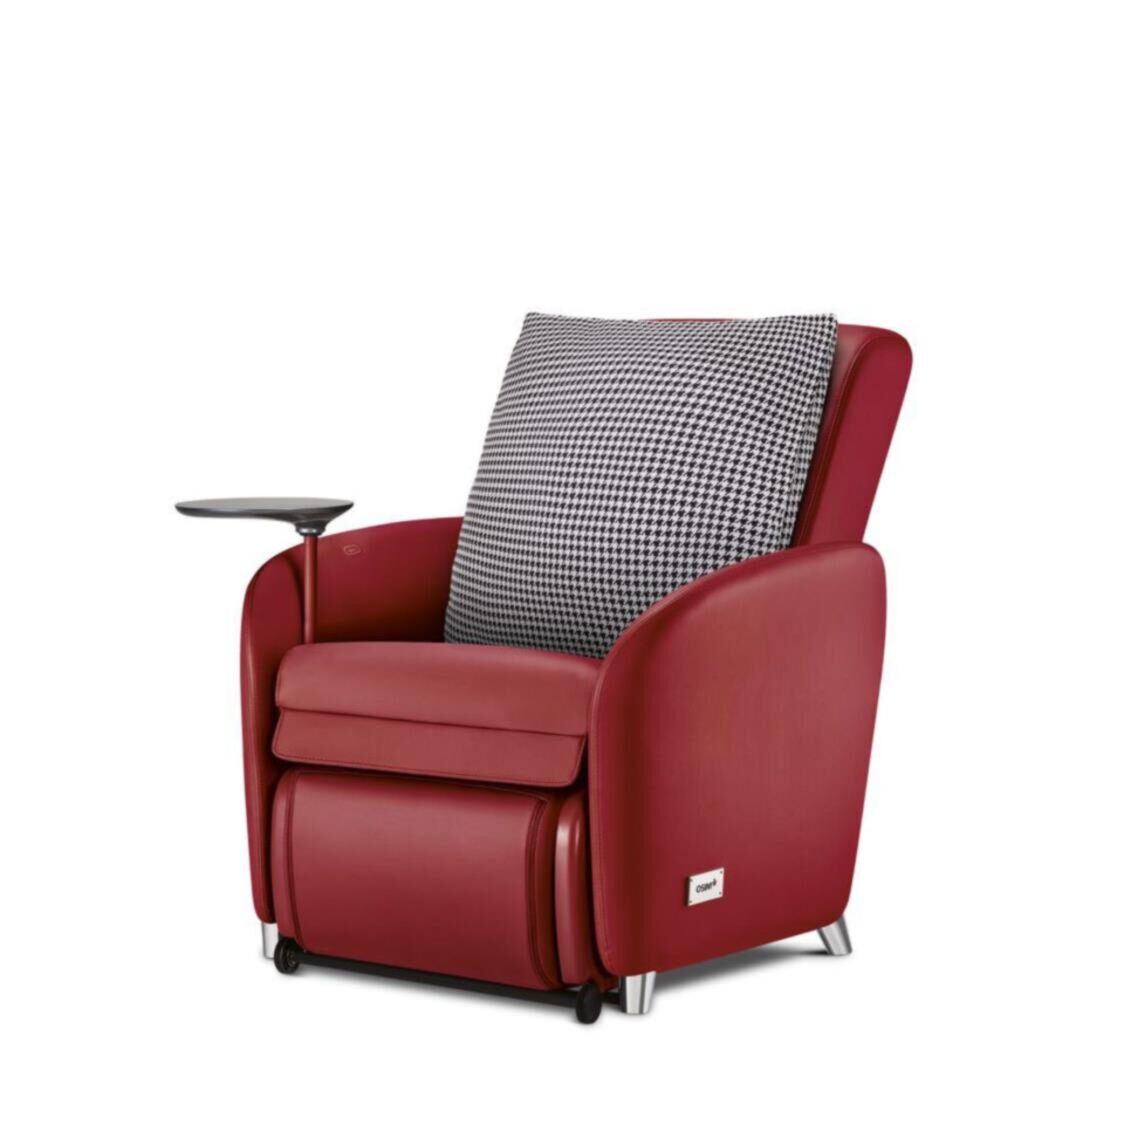 OSIM uDiva 3 - The Worlds 1st Smart Sofa Red